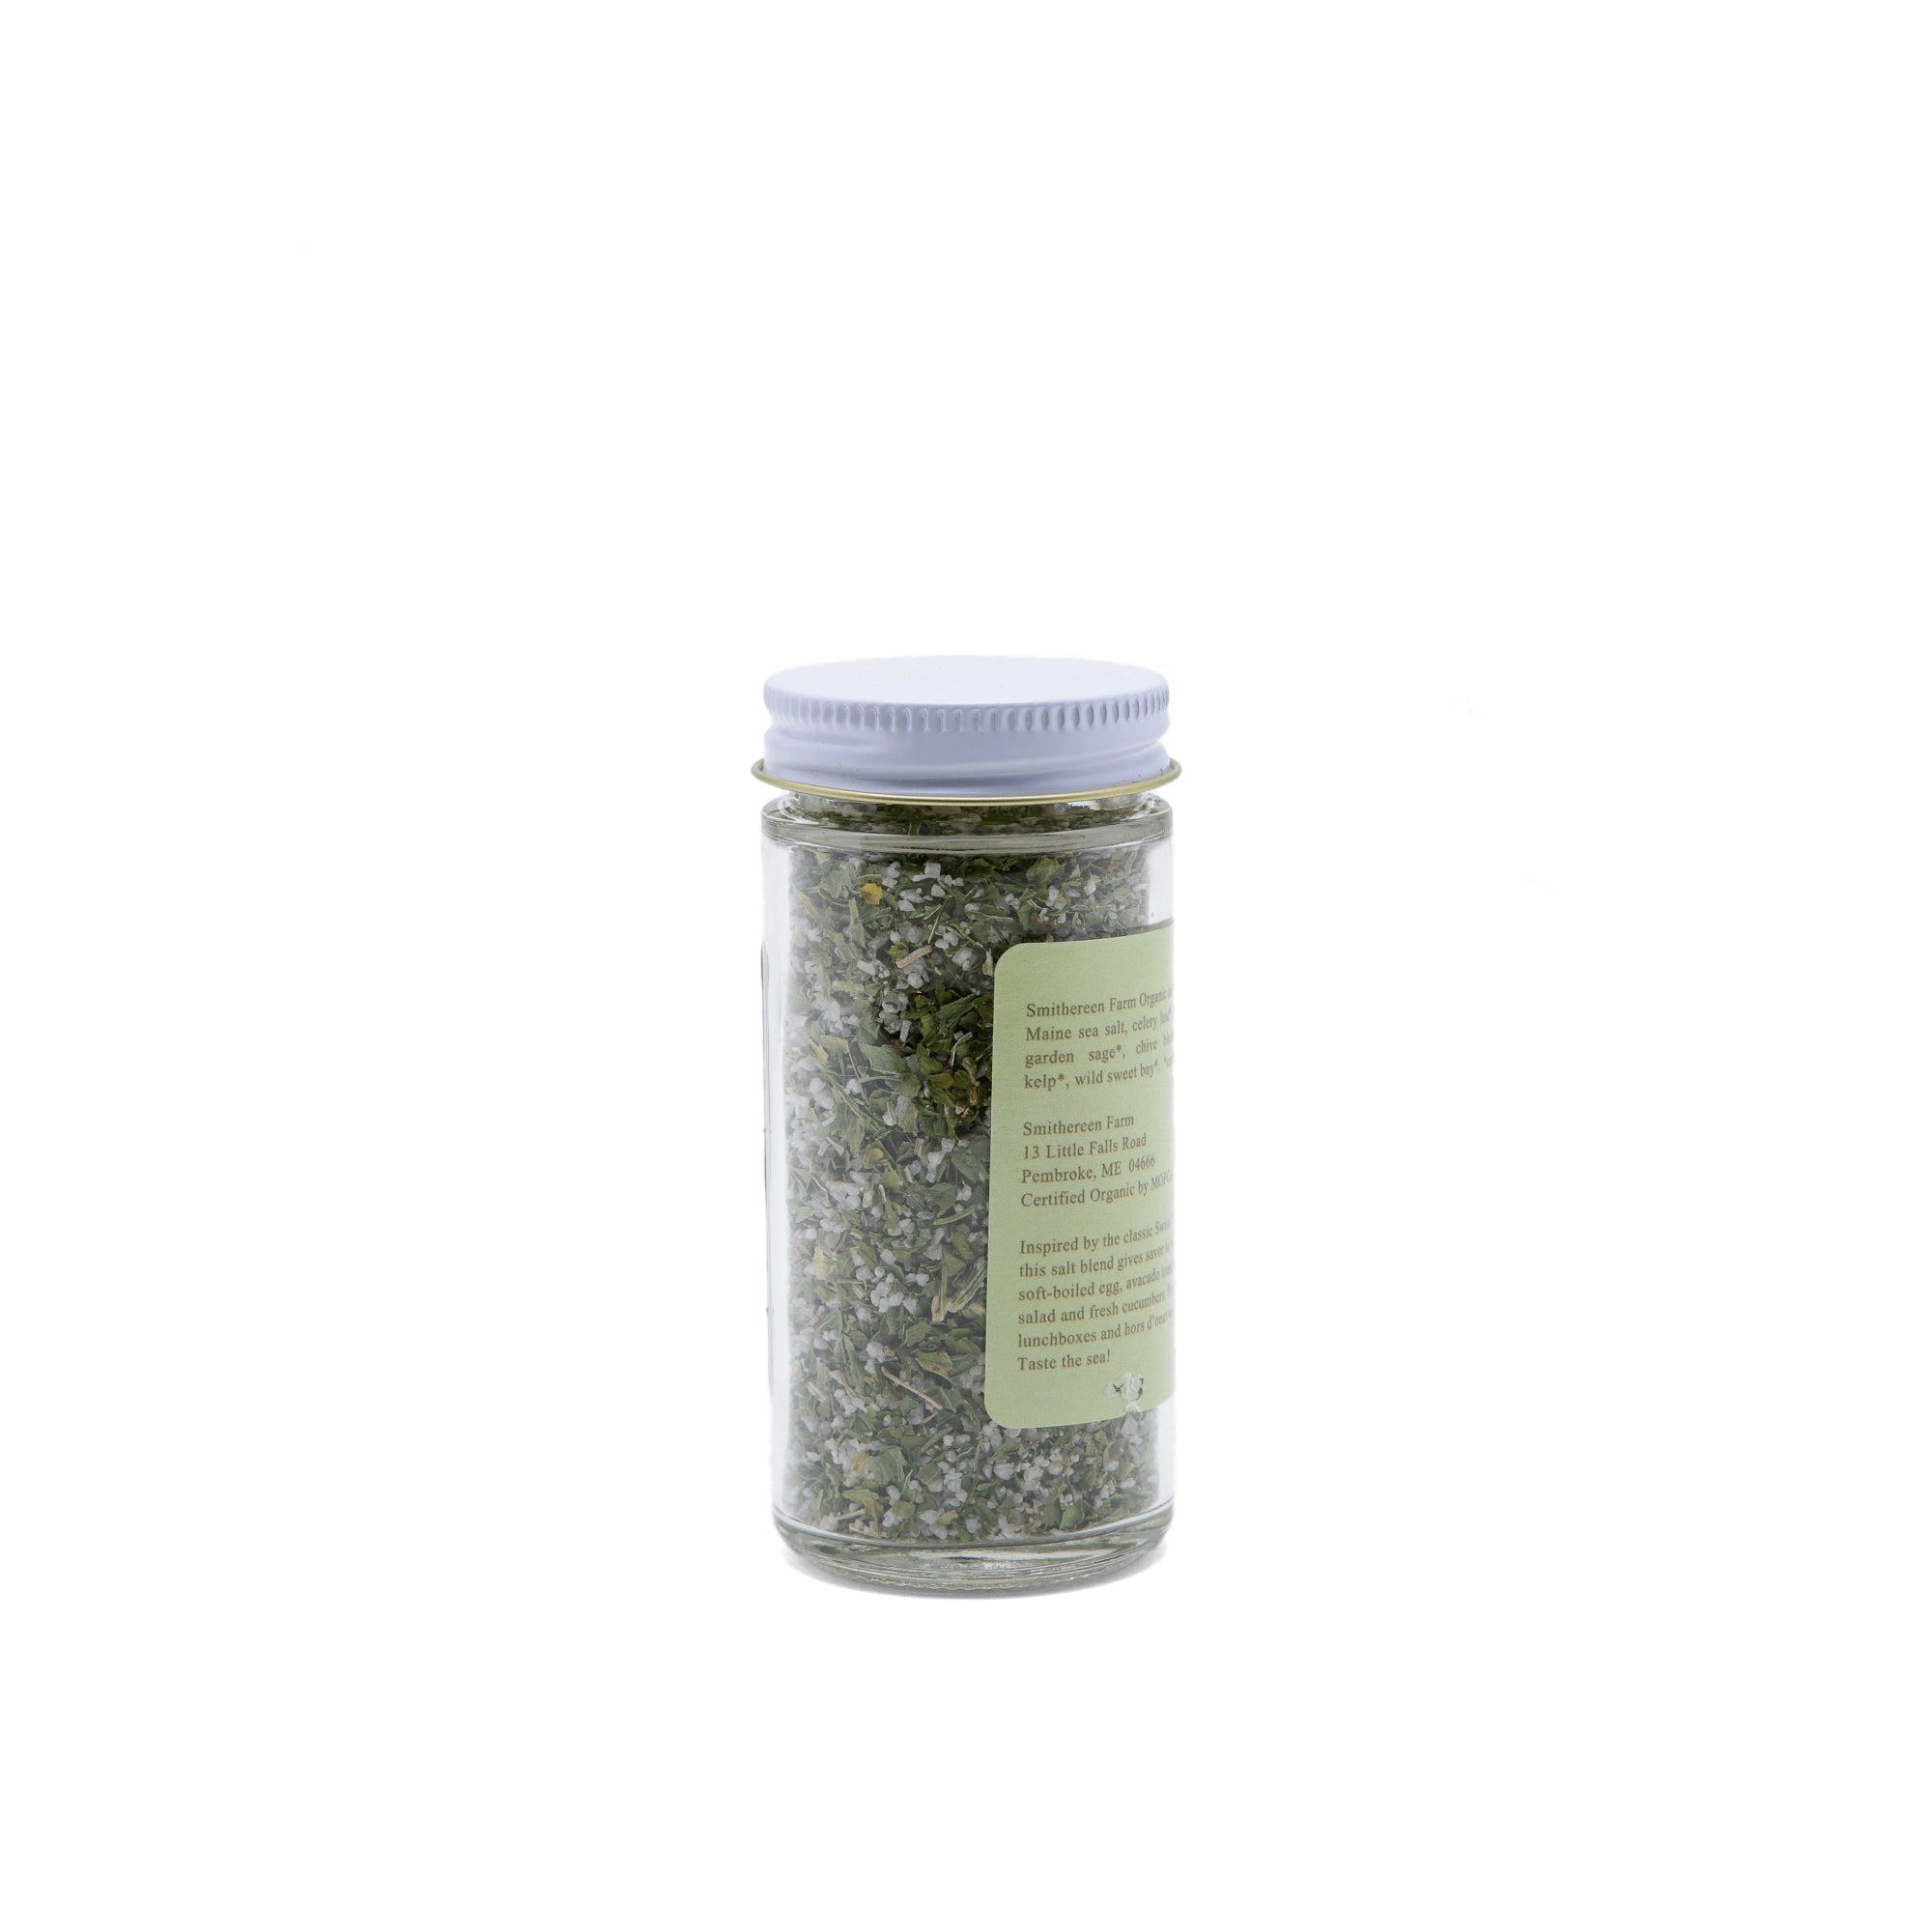 Zerba Herb Salt